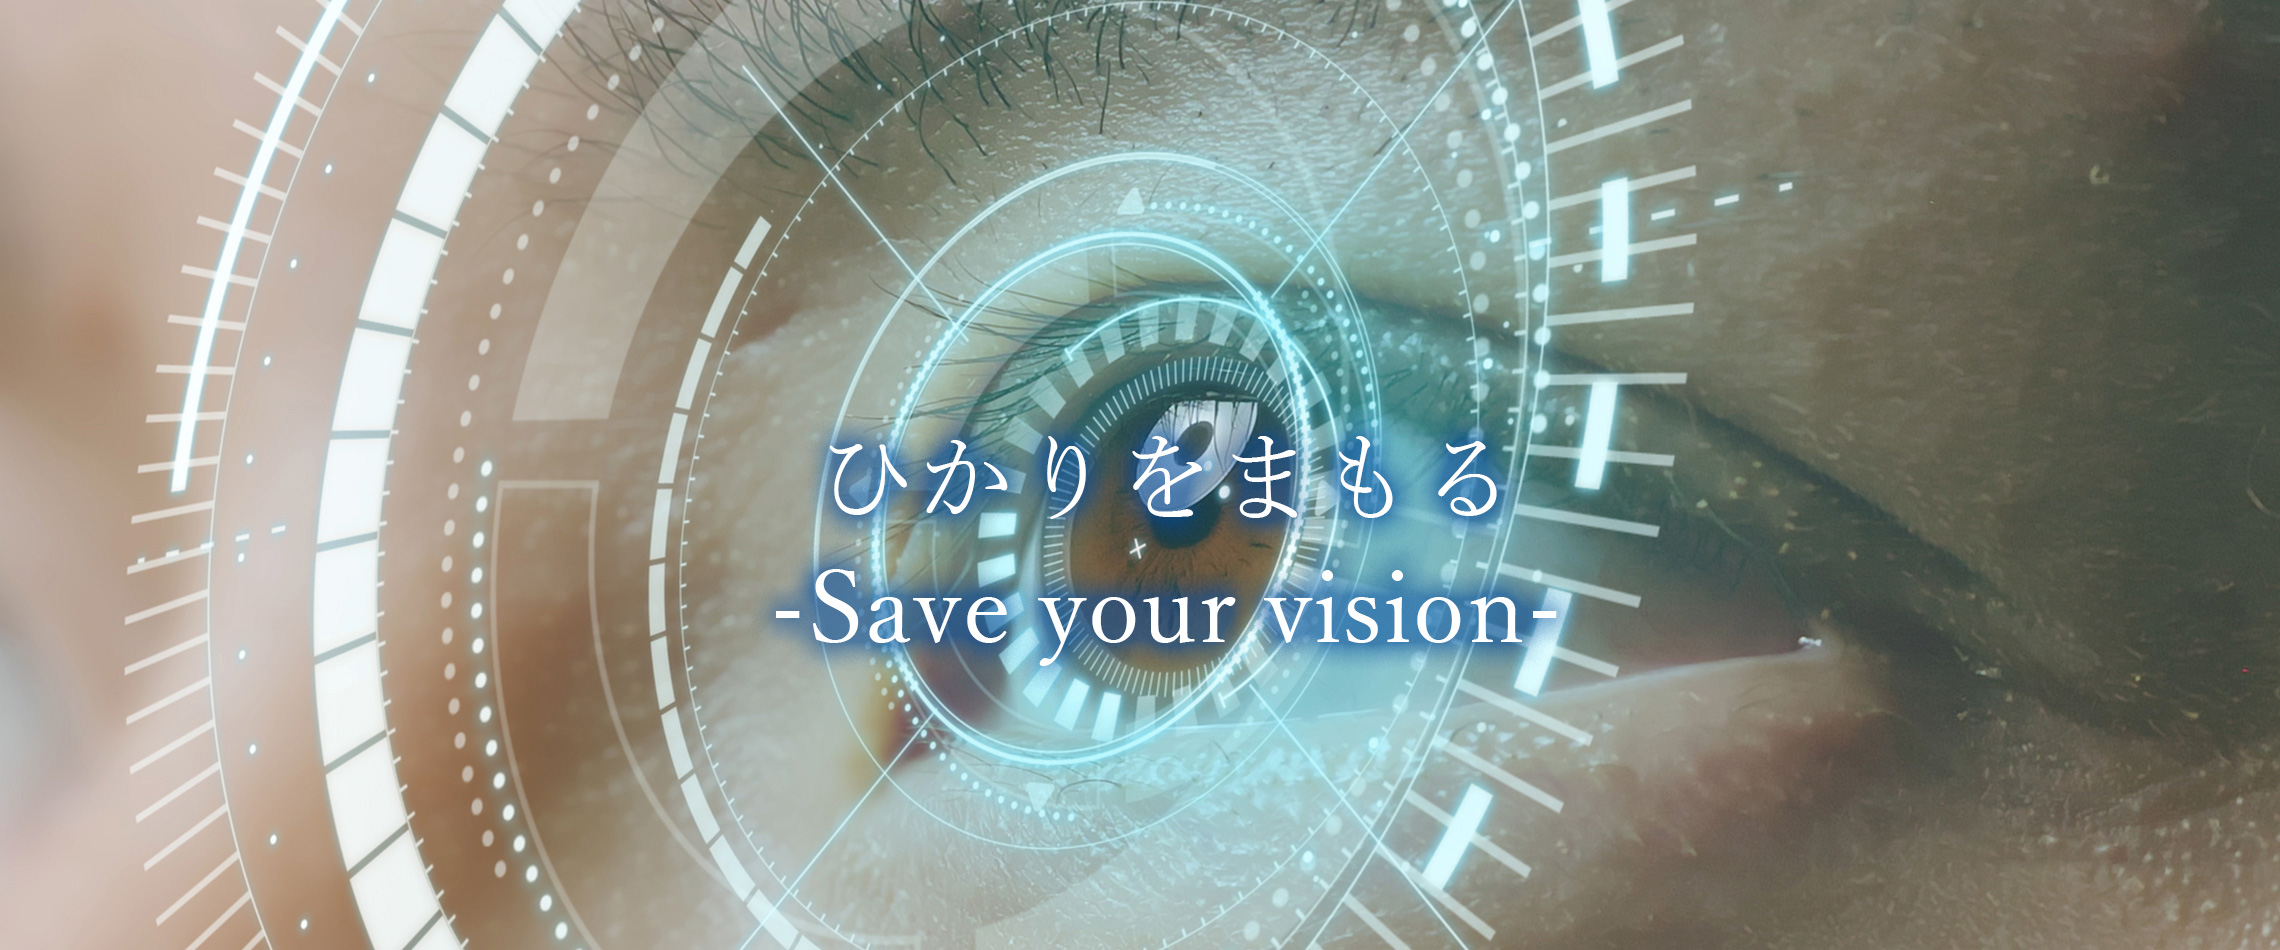 ひかりをまもる -Save your vision-